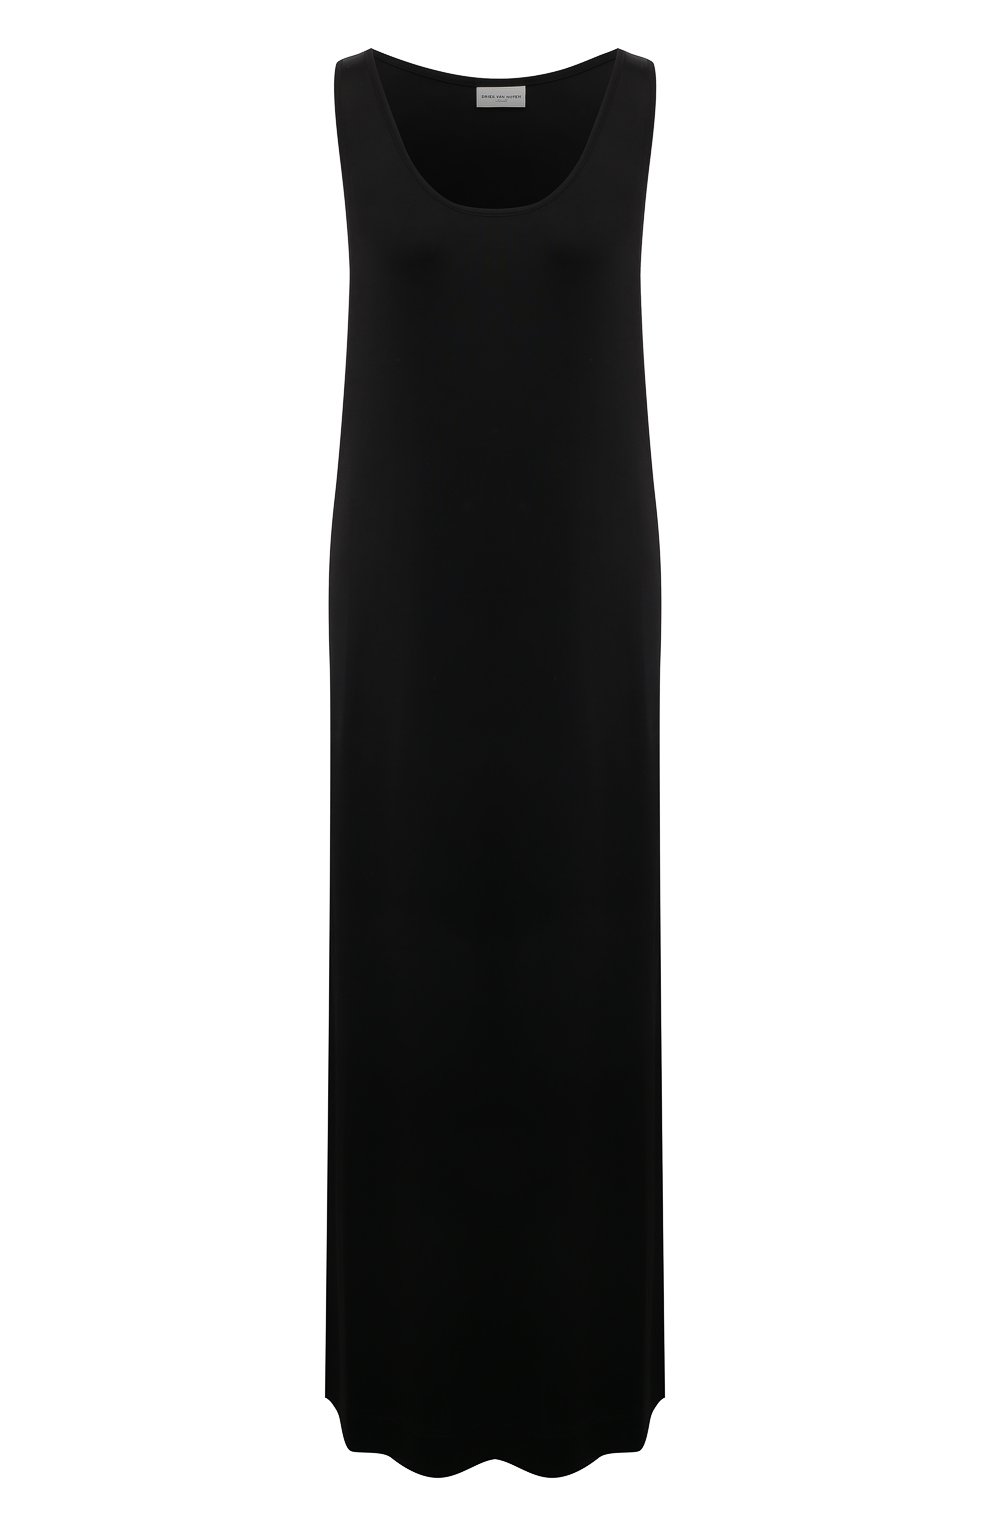 Фото Женское черное платье из вискозы DRIES VAN NOTEN, арт. 232-011148-7130 Португалия 232-011148-7130 